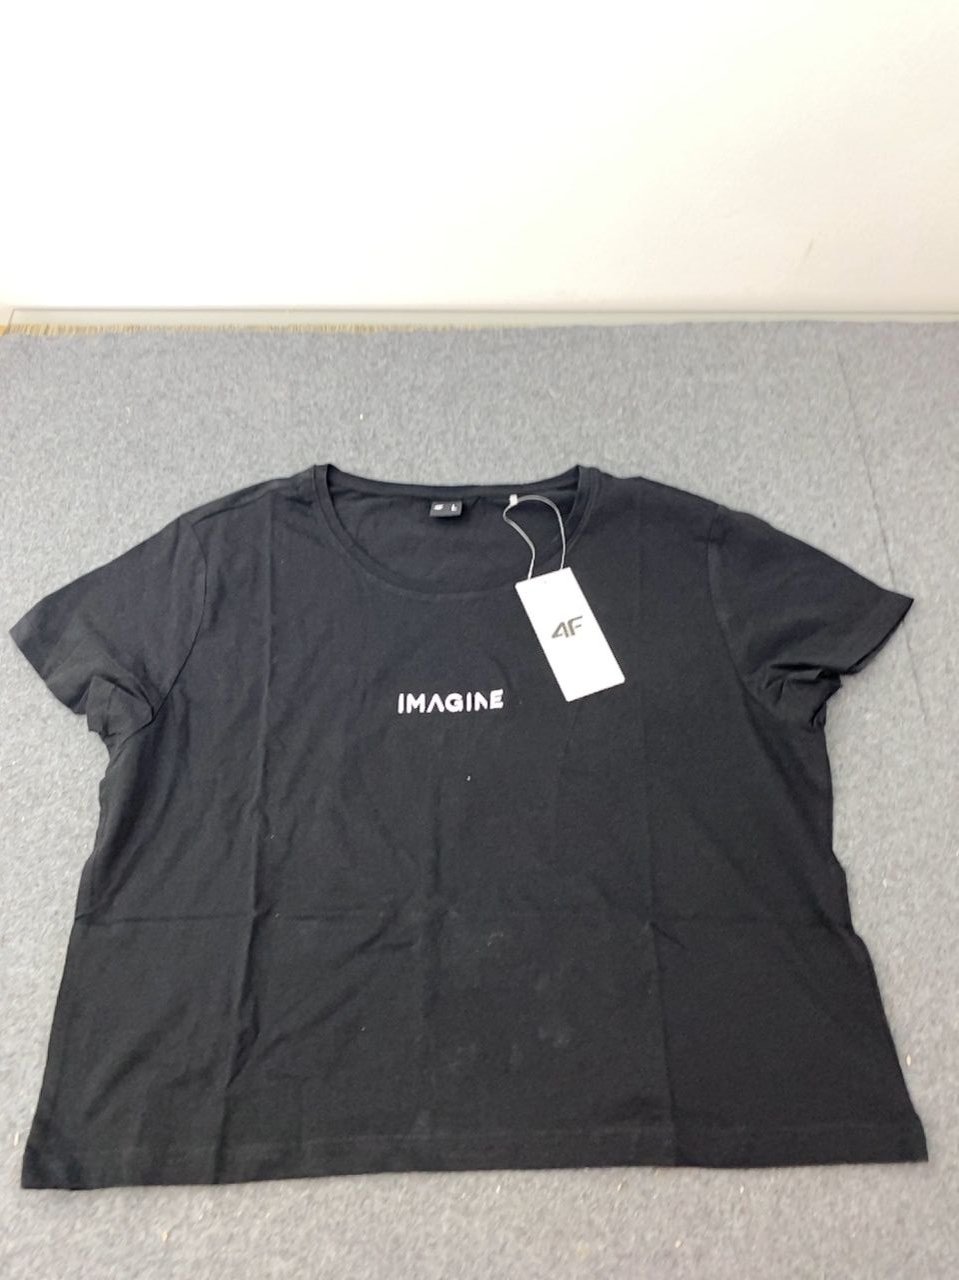 Dámské oversize tričko s nápisem - černá barva 4F vel. L